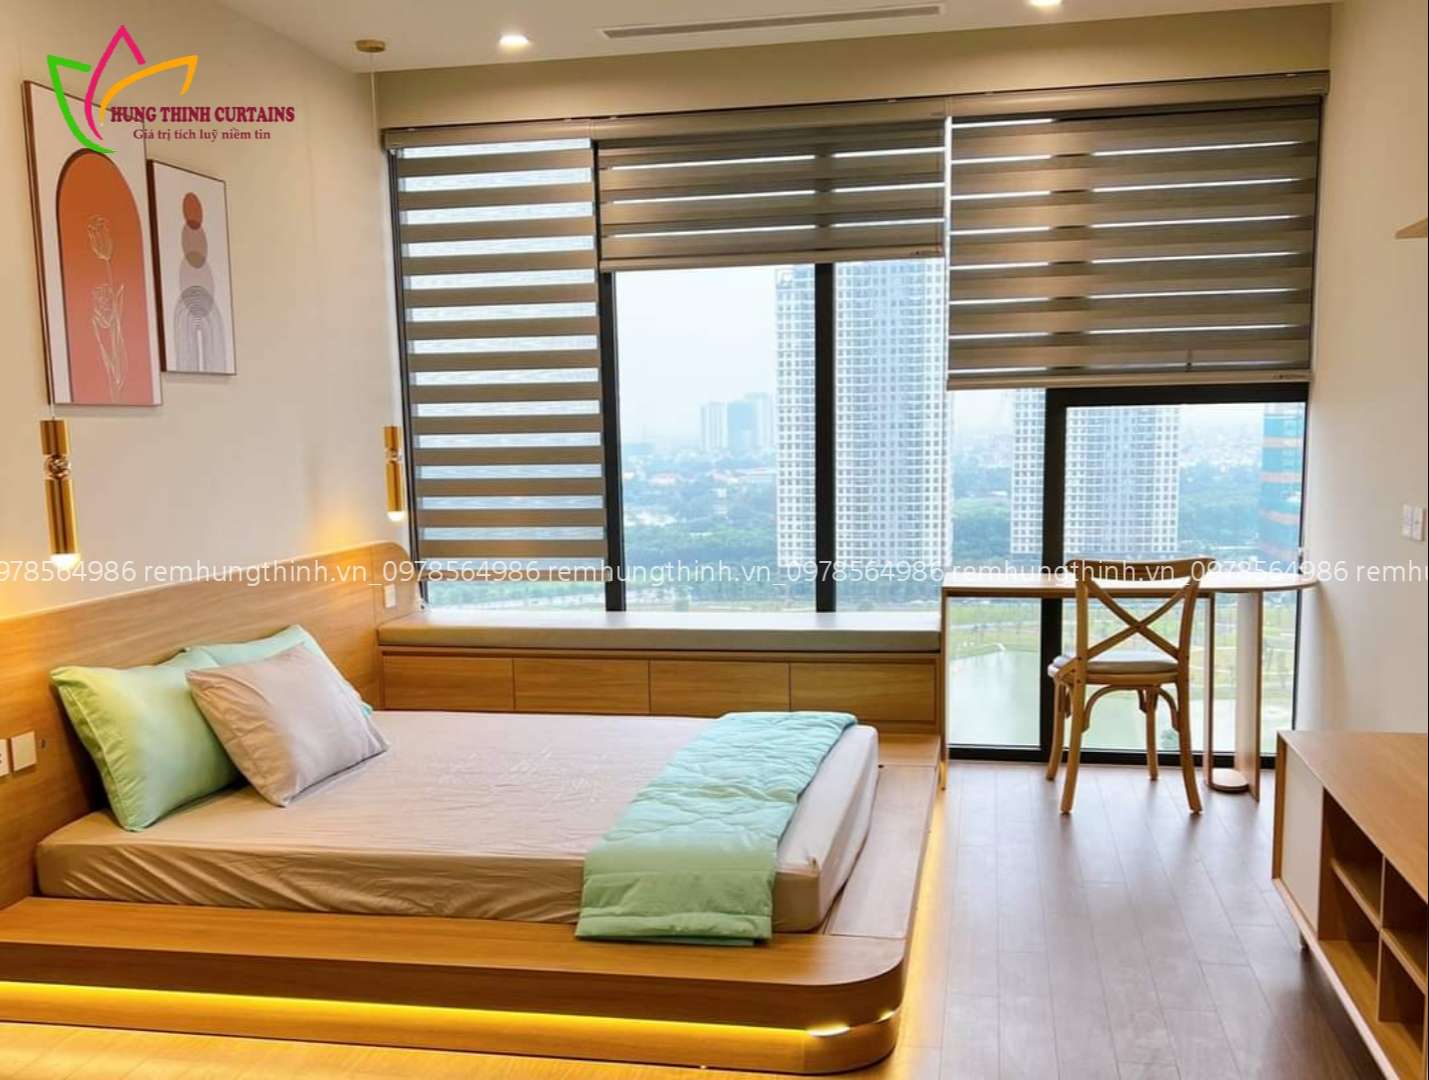 Chọn Rèm Cầu Vồng Phòng Ngủ Tại Thường Tín- Phú Xuyên